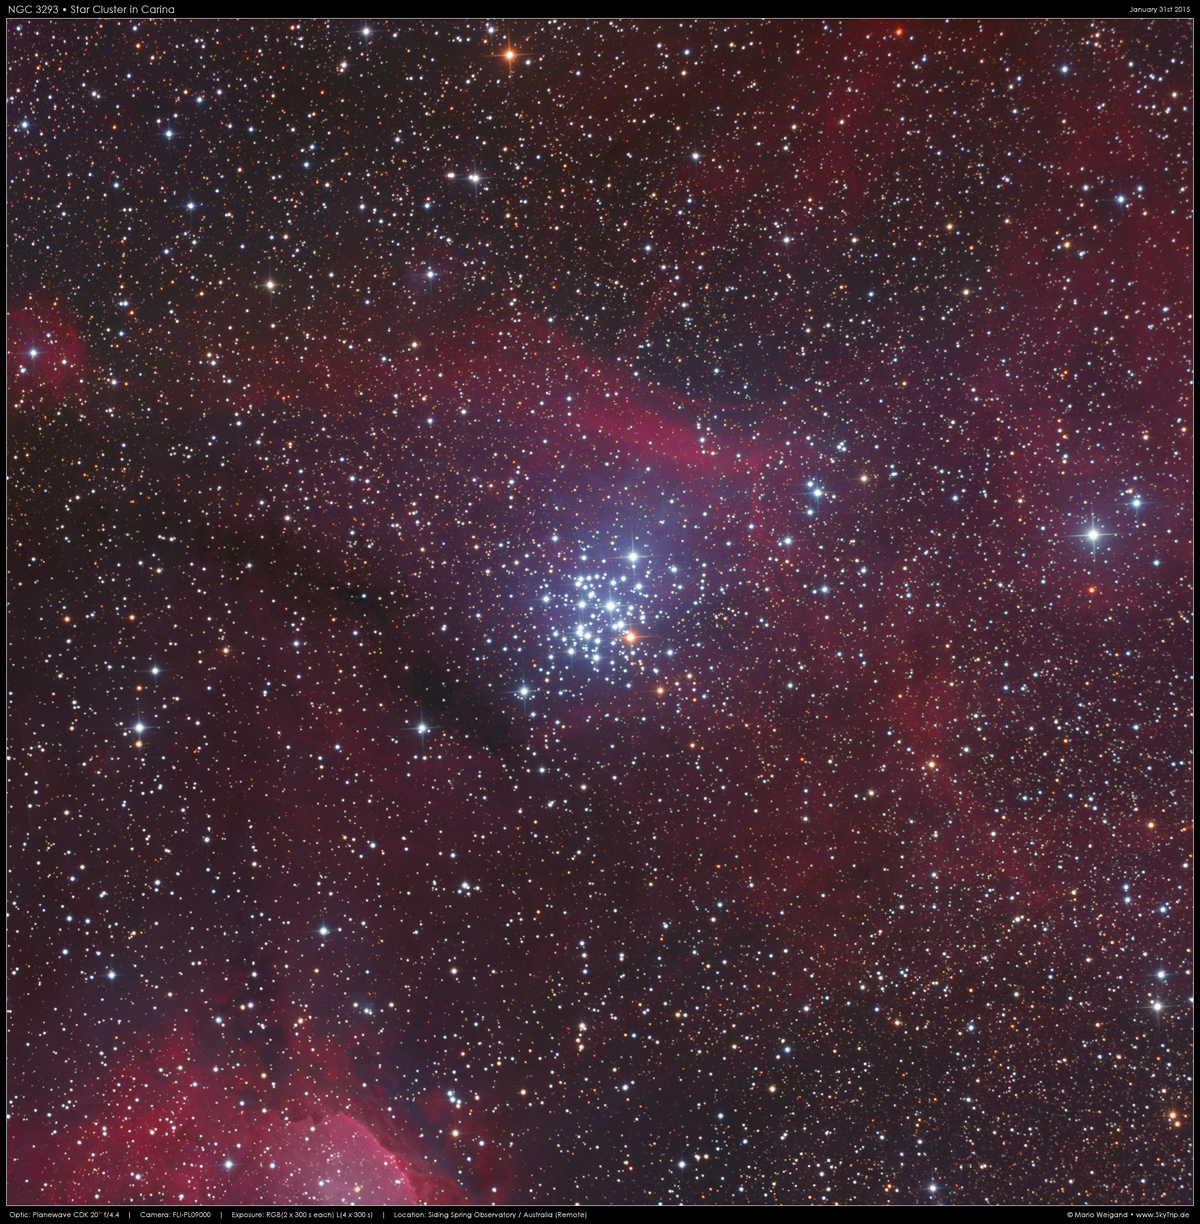 Der offene Sternhaufen NGC 3293 in Carina